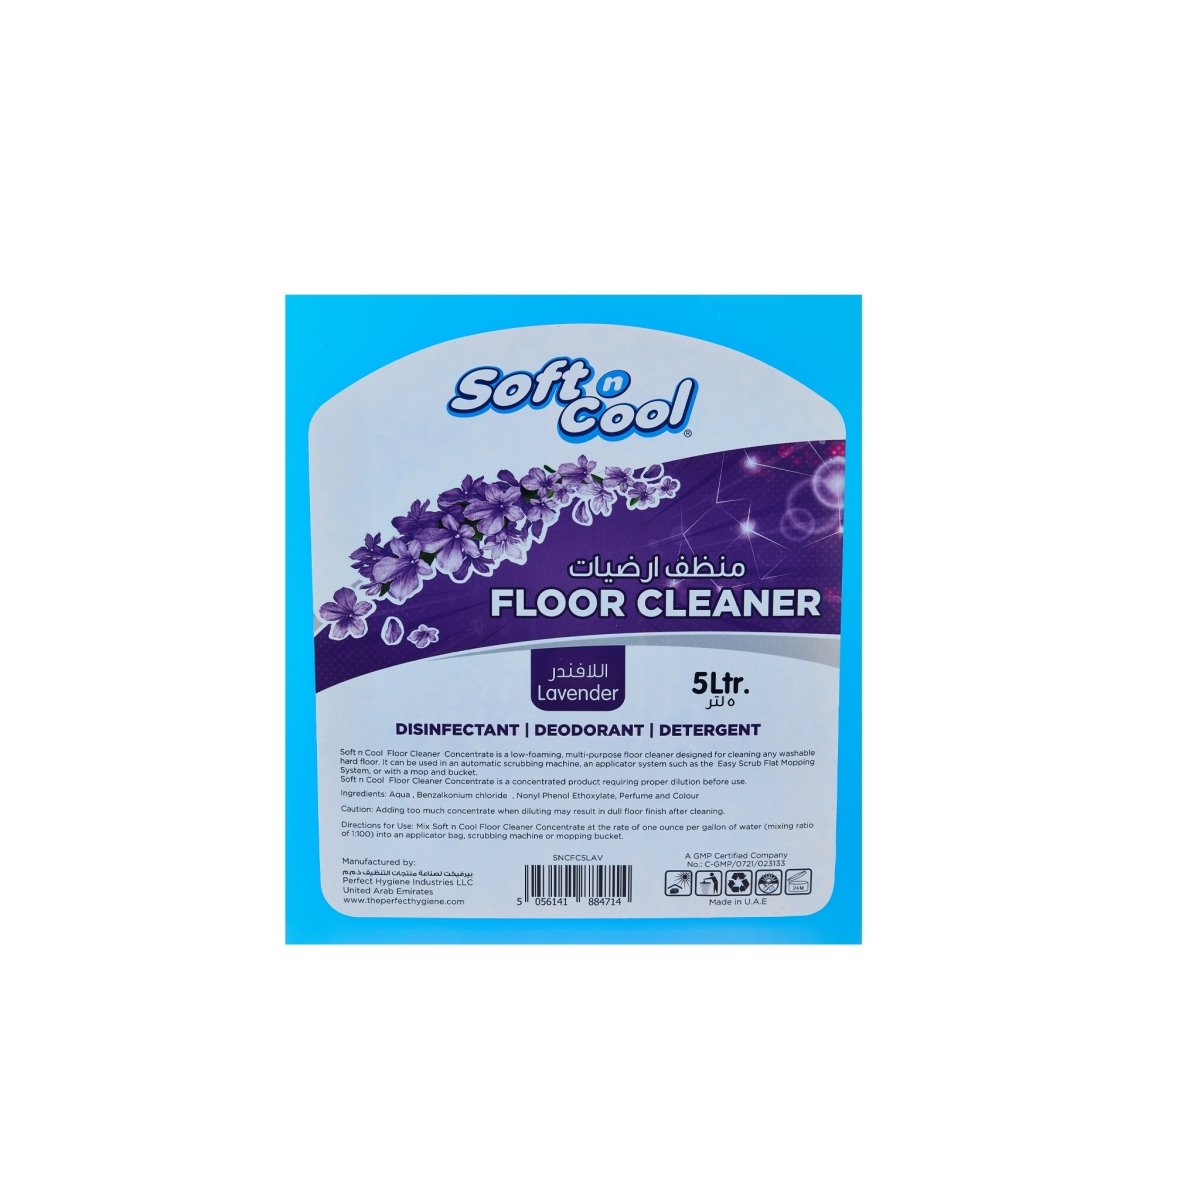 Floor Cleaner Lavender - hotpackwebstore.com - Floor Cleaner